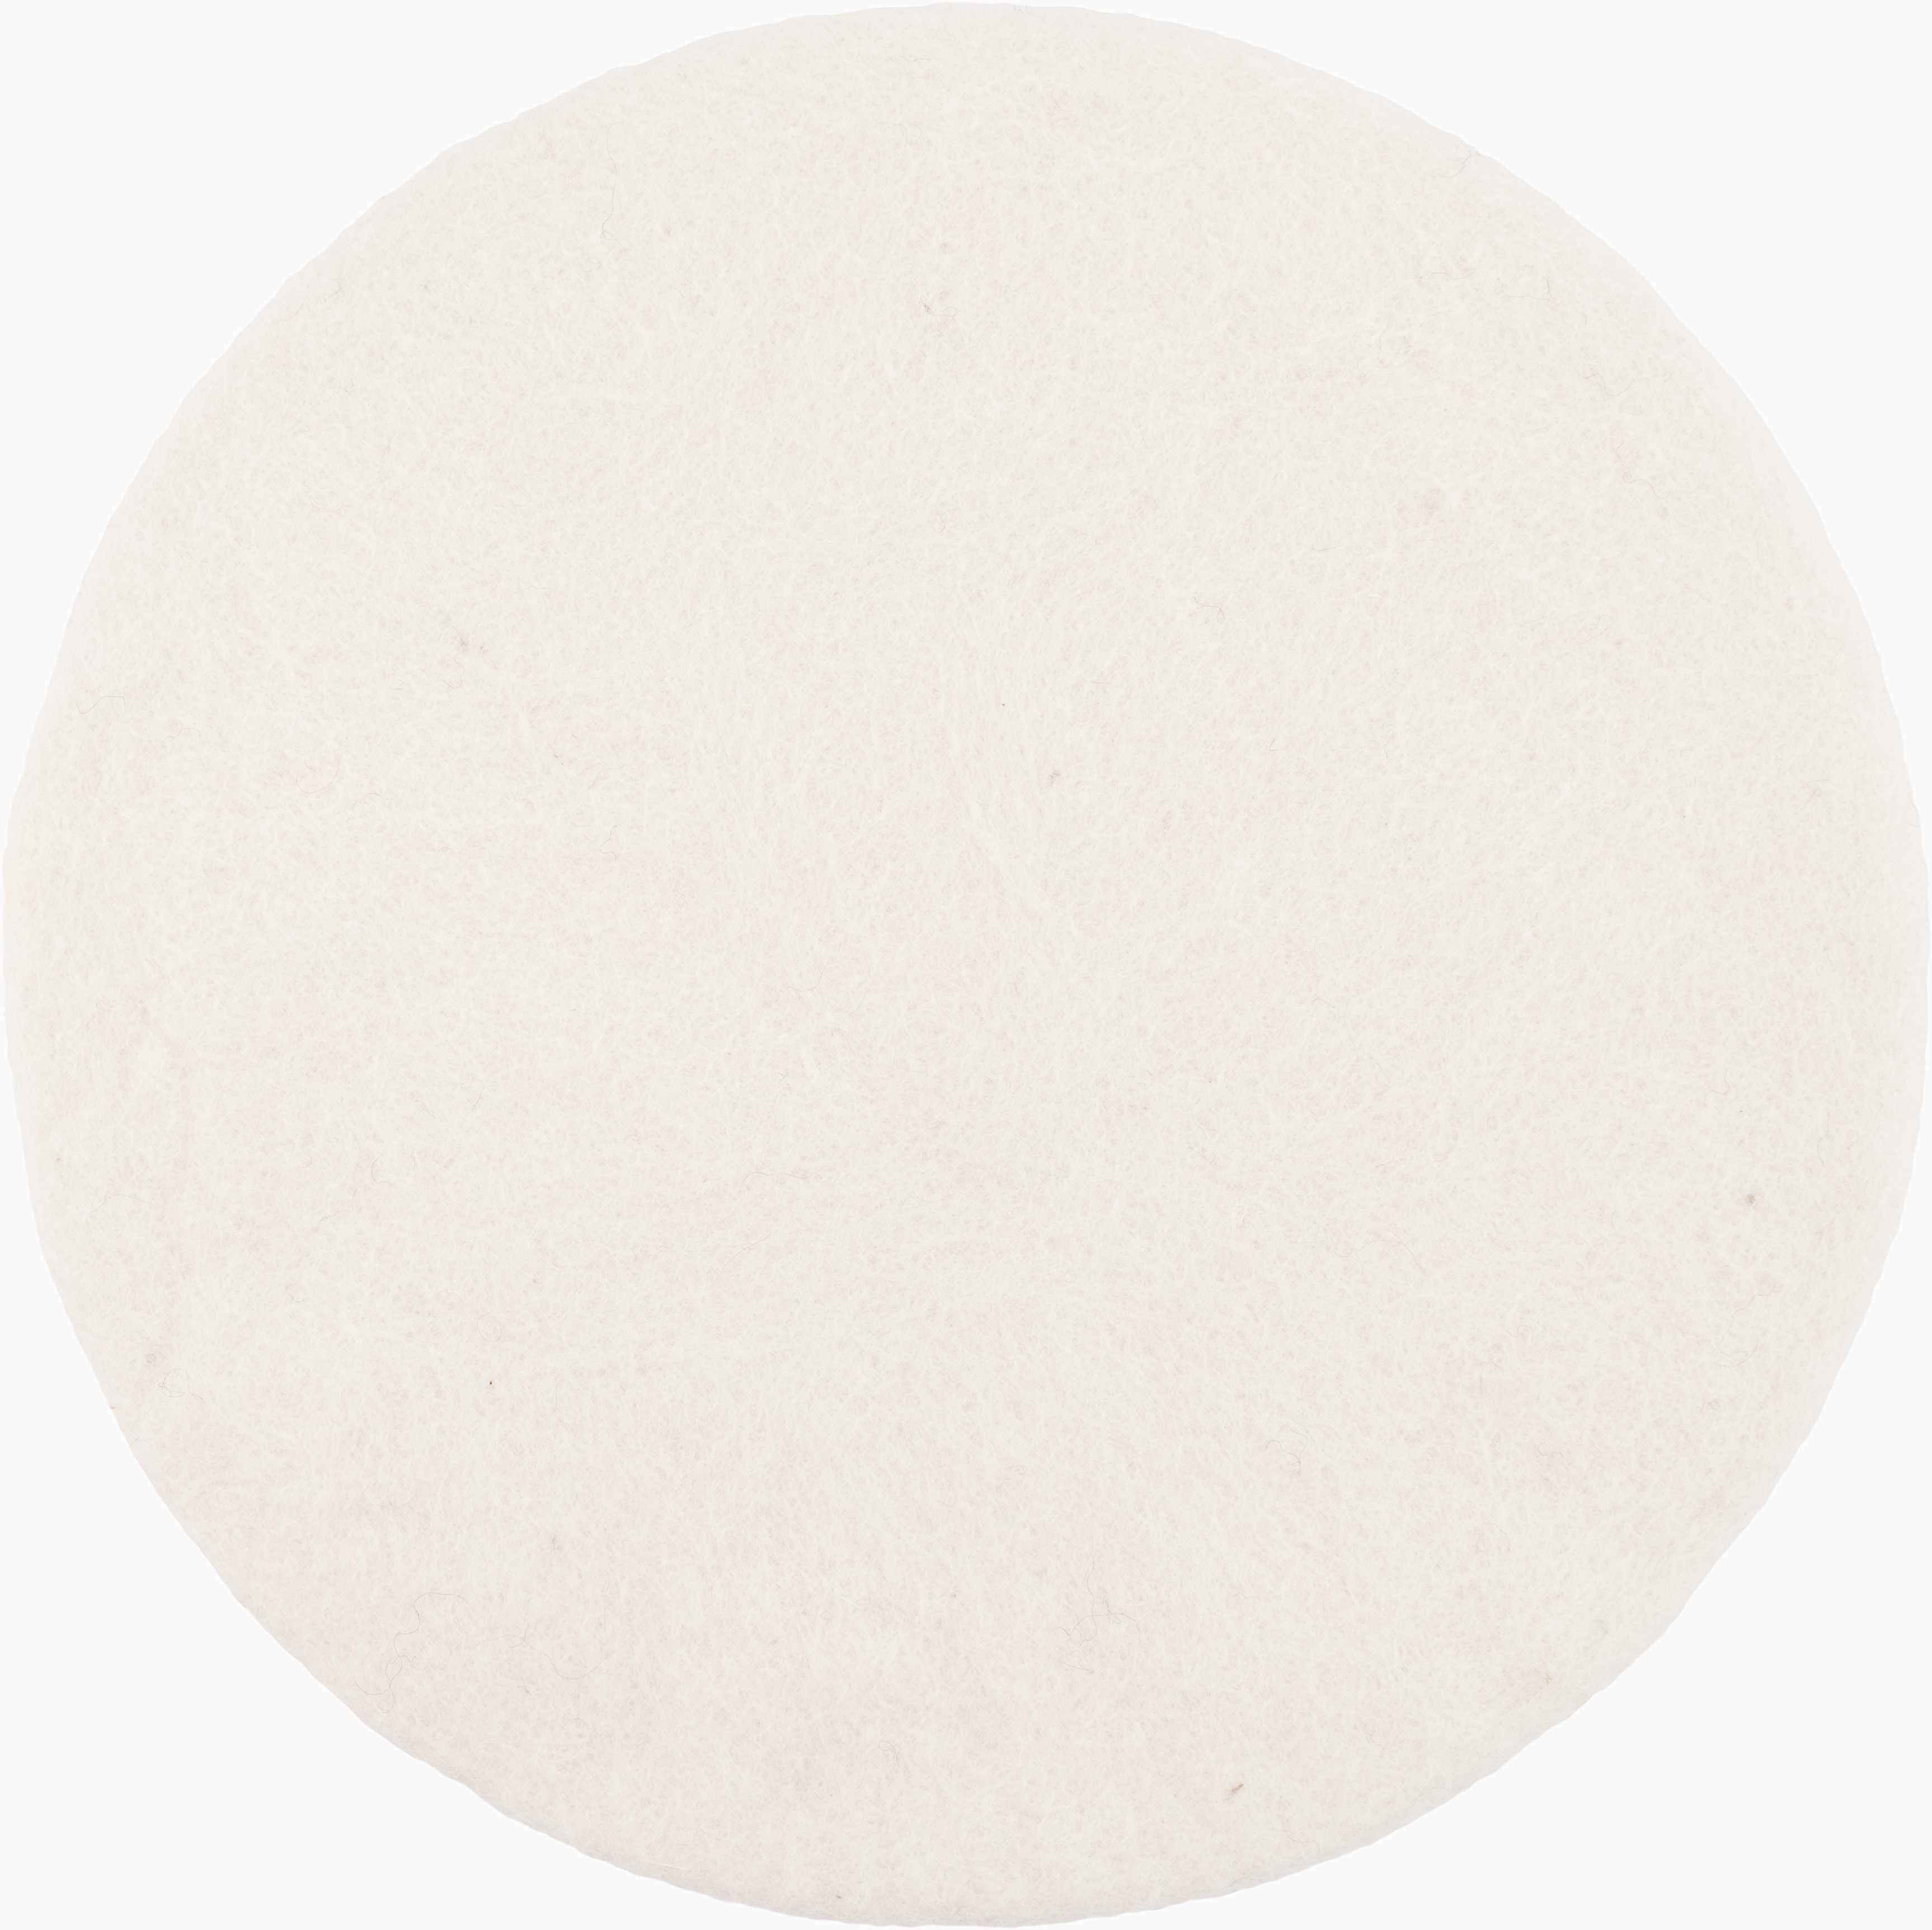 myfelt Stuhlkissen Filz Sitzauflage ⌀ 36 cm, 100% reiner Schurwolle, rund, schmutzabweisend